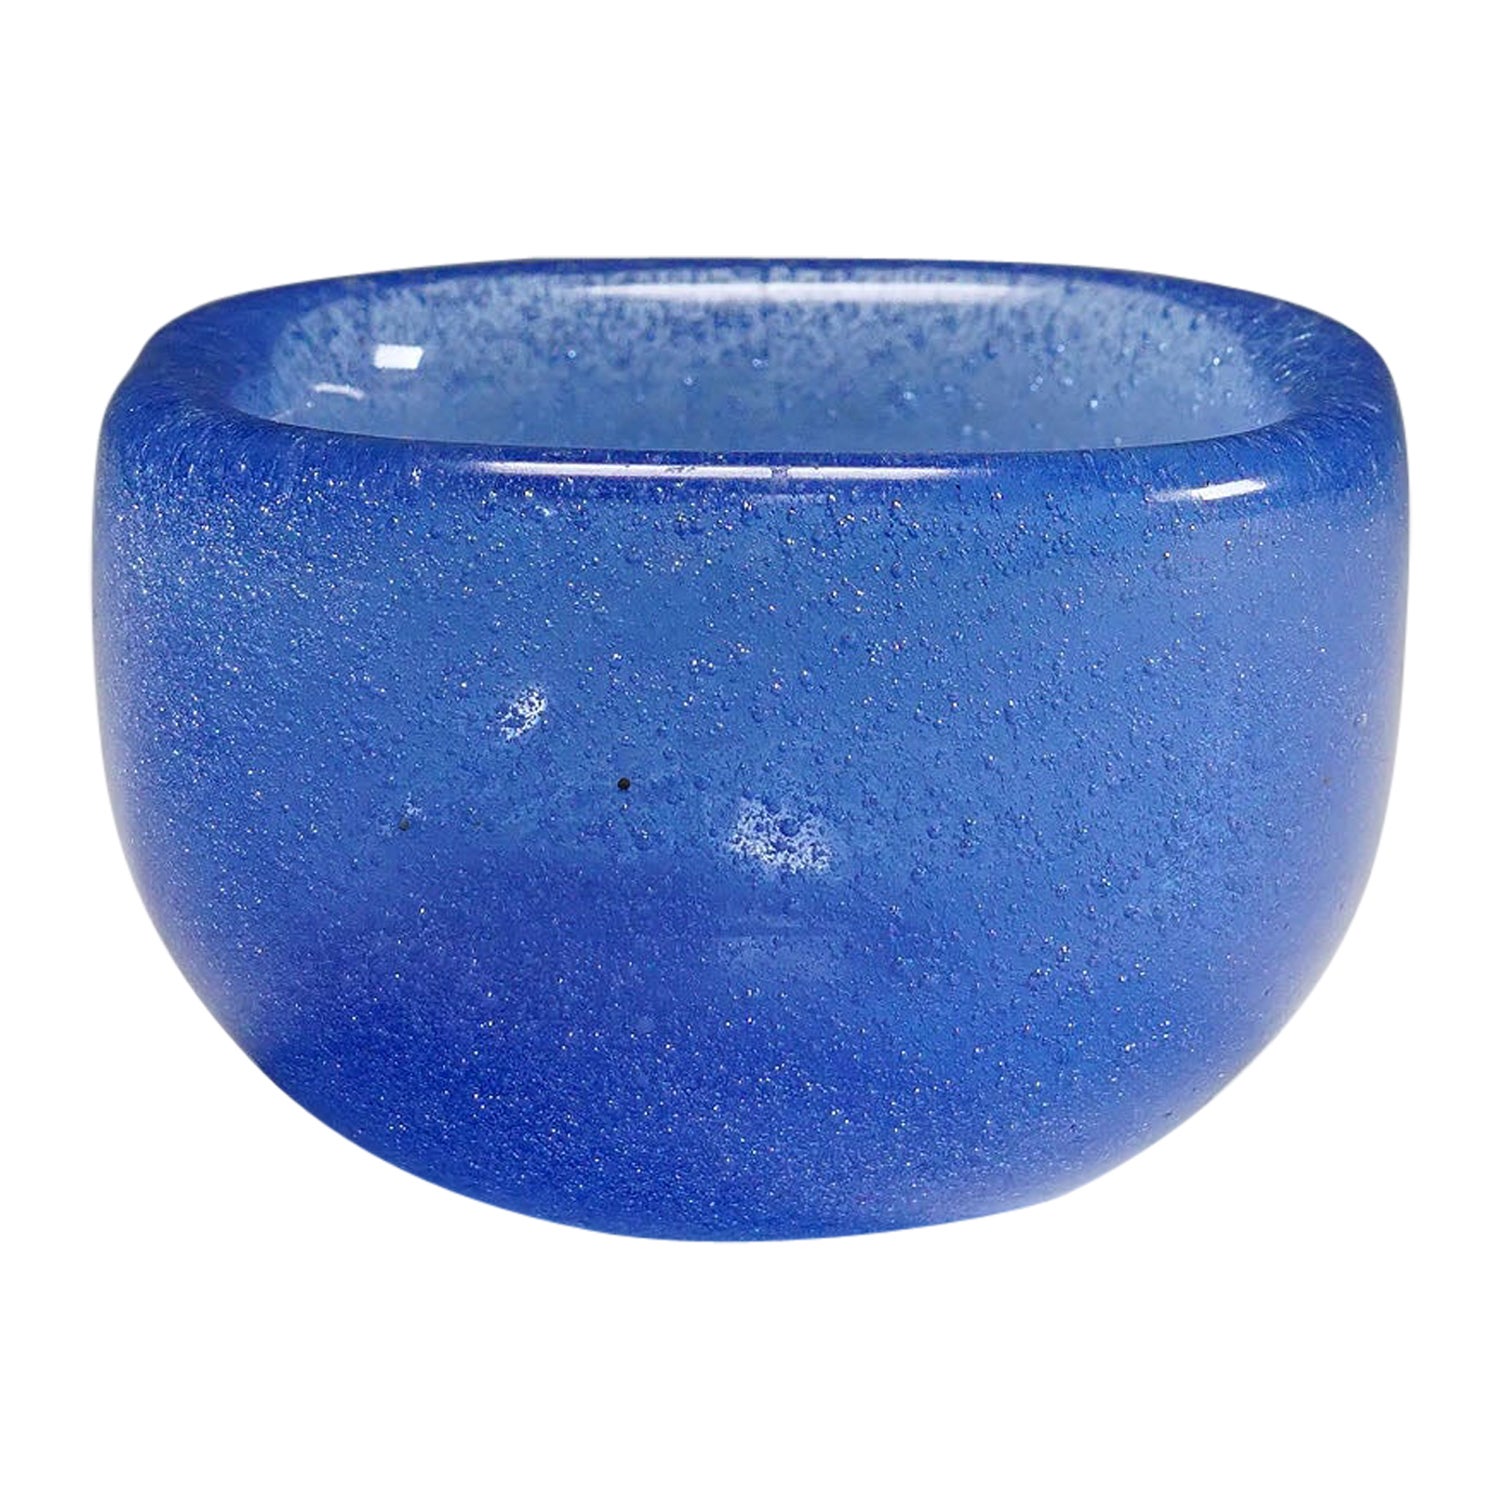 Small Bowl in Blue Bollicine Glass, Carlo Scarpa for Venini Murano 1930s